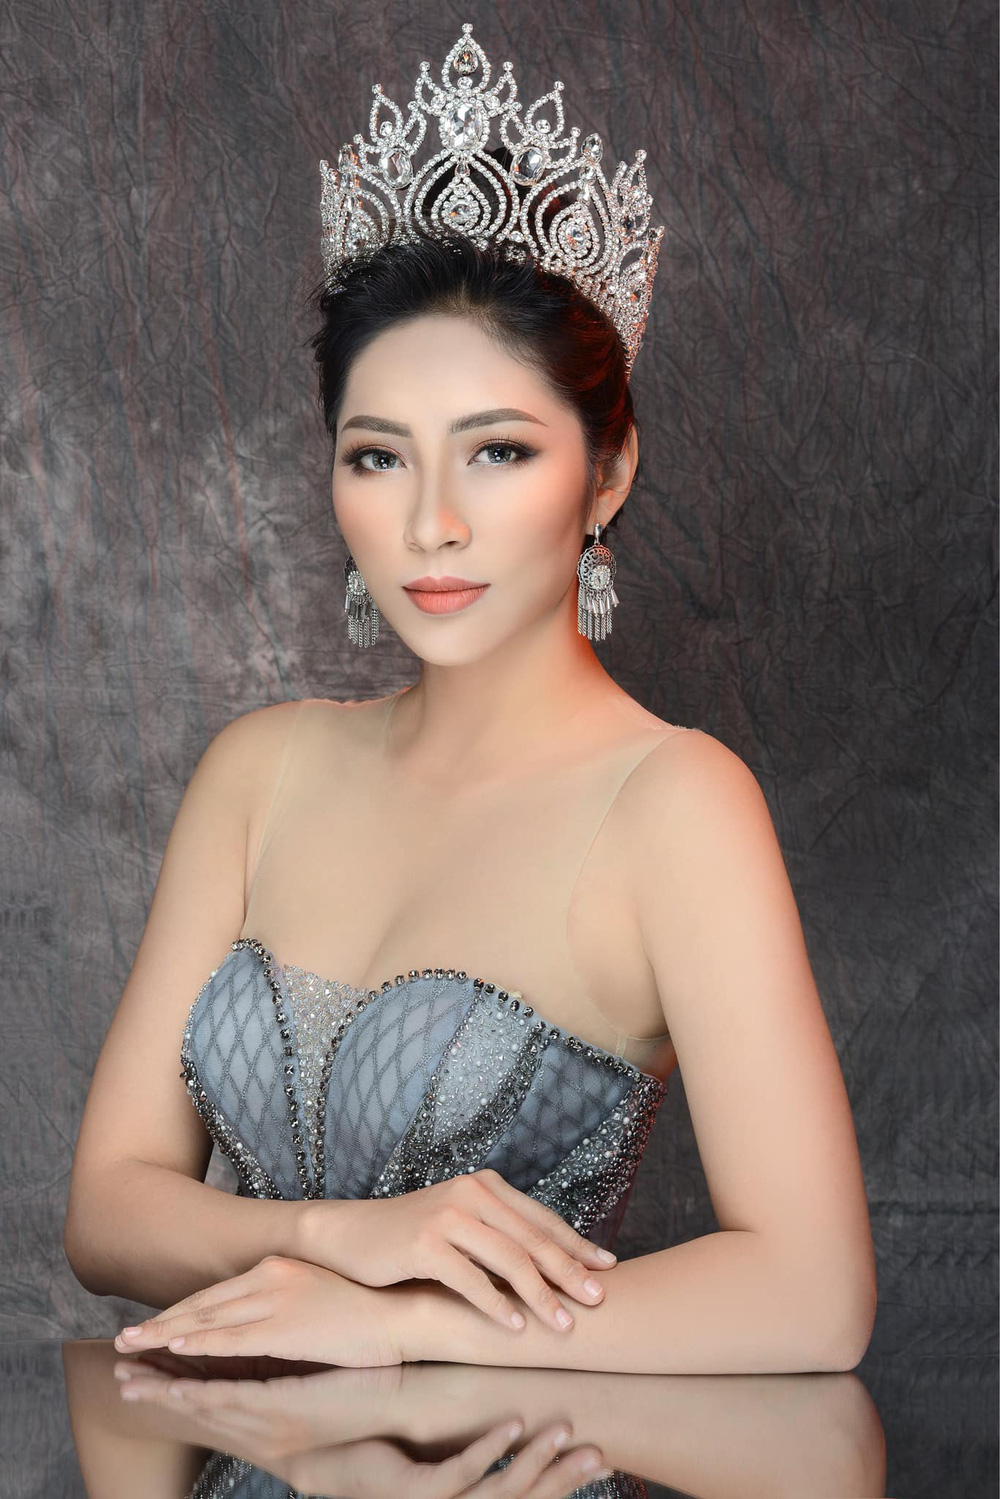 Hoa hậu Đại dương 2014 Đặng Thu Thảo từng nhận phải nhiều tranh cãi khi mới đăng quang nhưng cô dần cải thiện nhan sắc, ngoại hình xinh đẹp hơn.